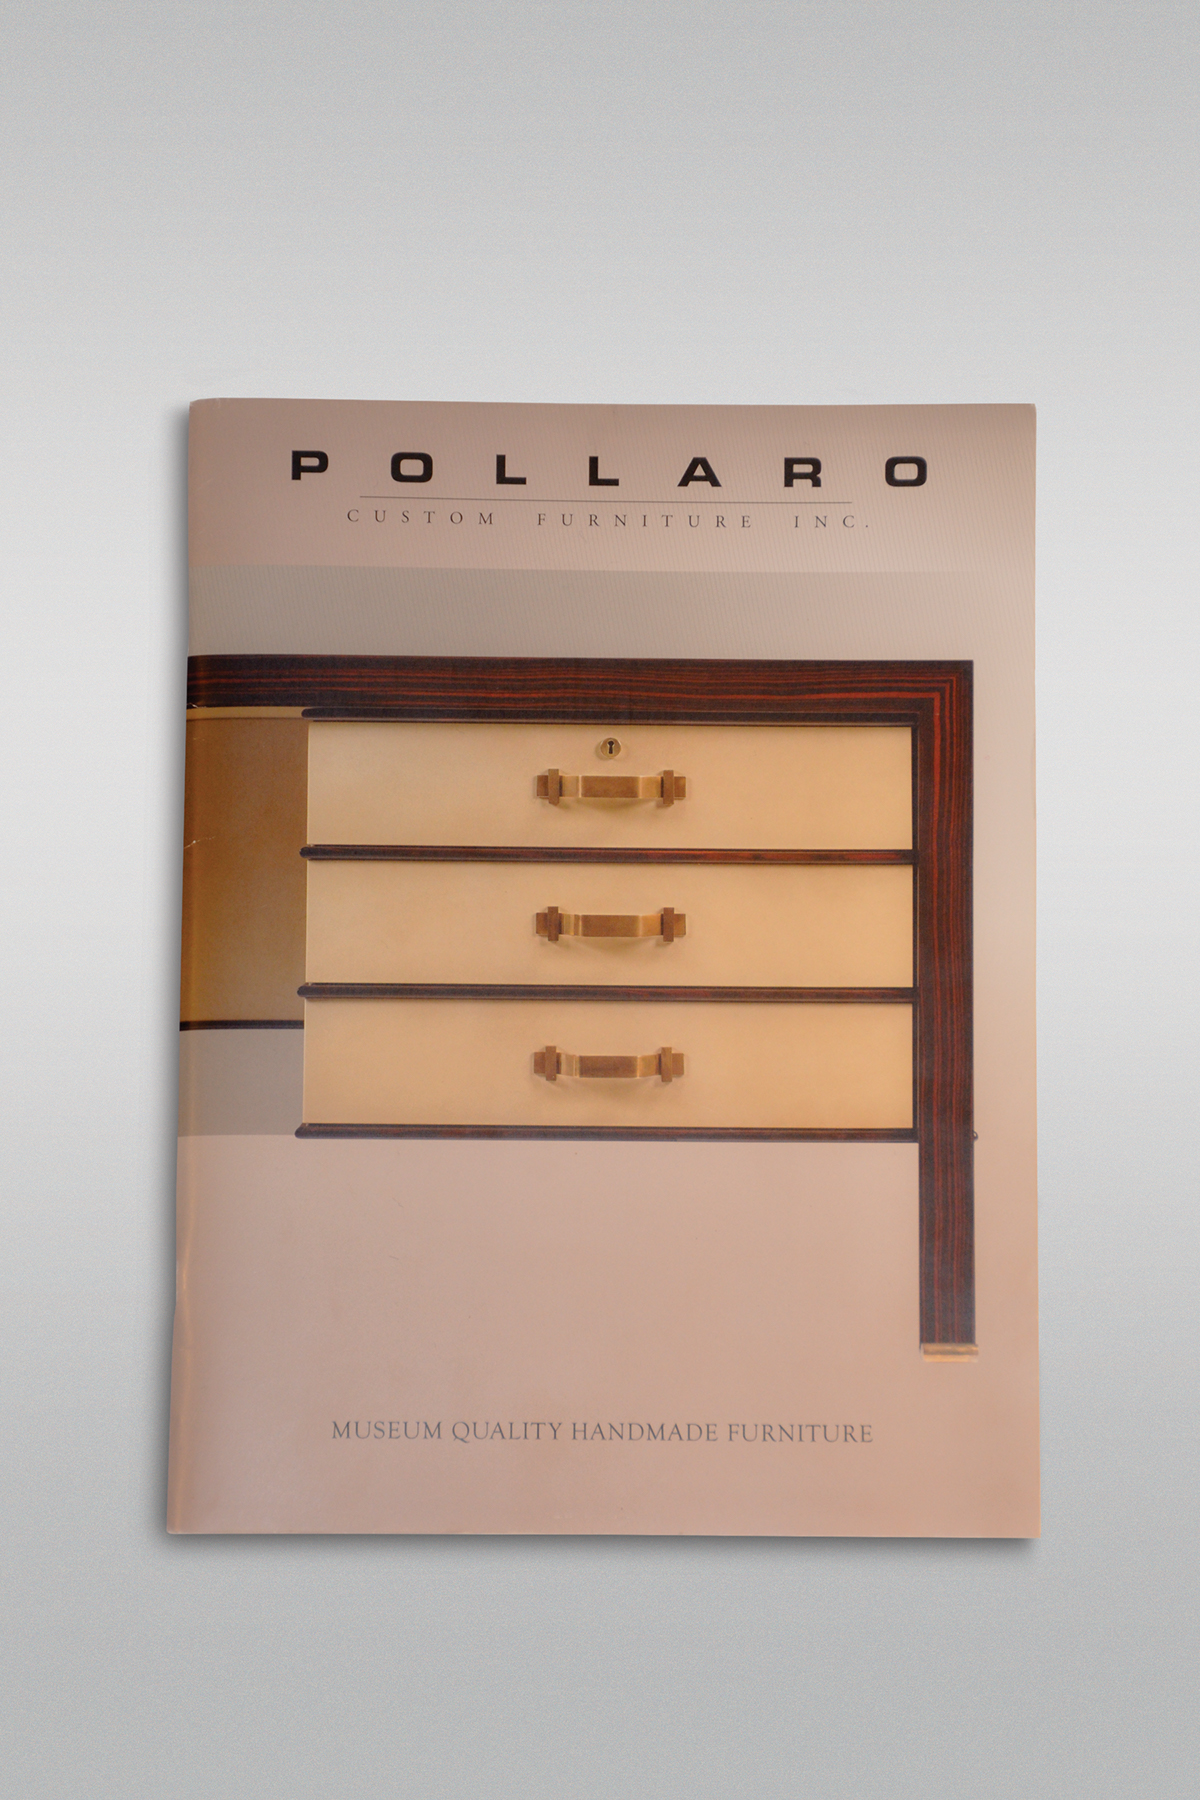 Adobe Portfolio pollaro furniture